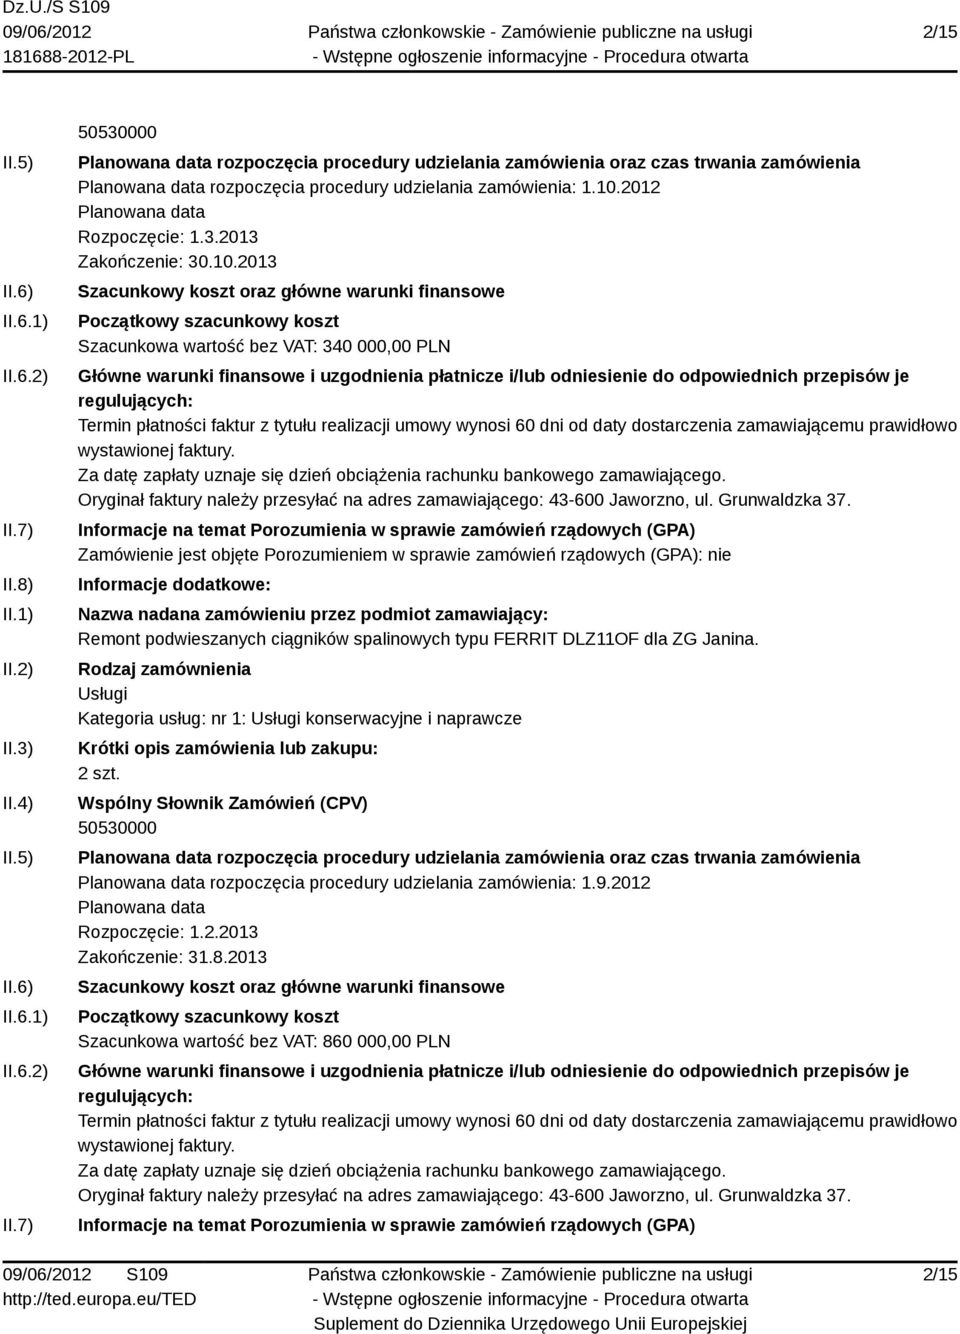 2013 Szacunkowa wartość bez VAT: 340 000,00 PLN Remont podwieszanych ciągników spalinowych typu FERRIT DLZ11OF